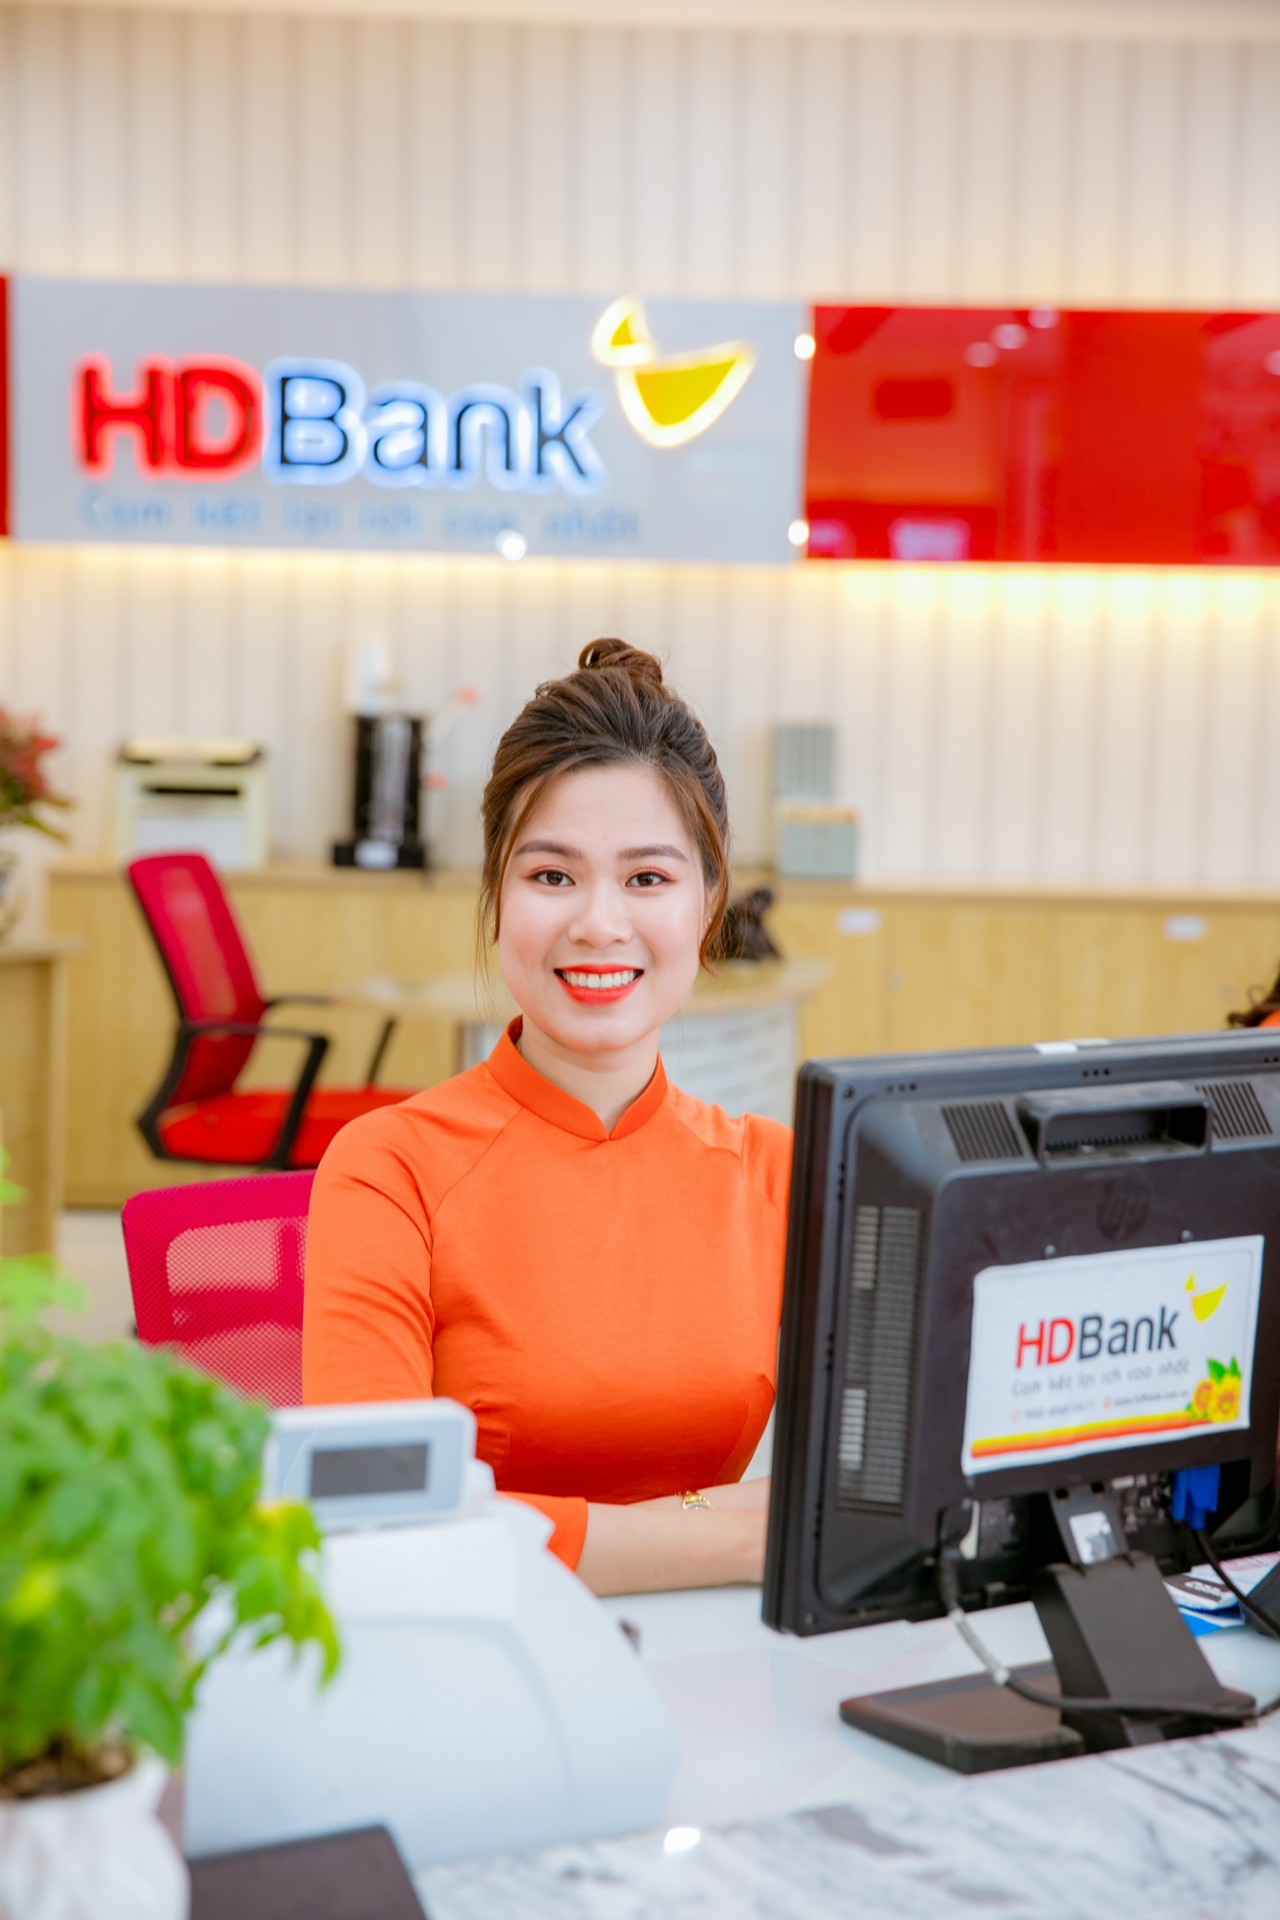 Ngân hàng nào lọp Top 1 được cán bộ nhân viên yêu thích nhất tại Việt Nam?